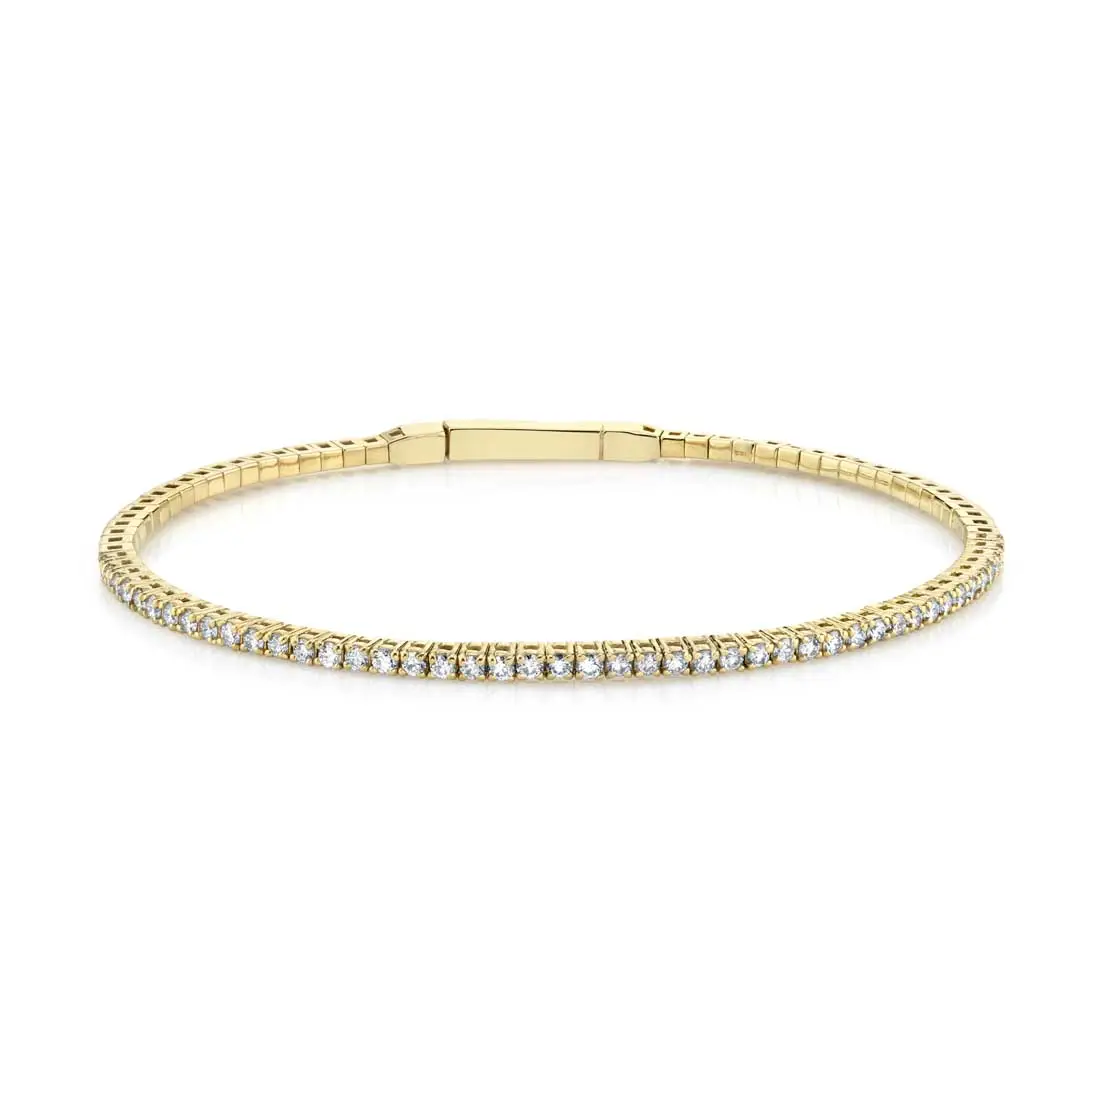 Buy Stunning Diamond Bracelet in 14KT Yellow Gold Online | ORRA